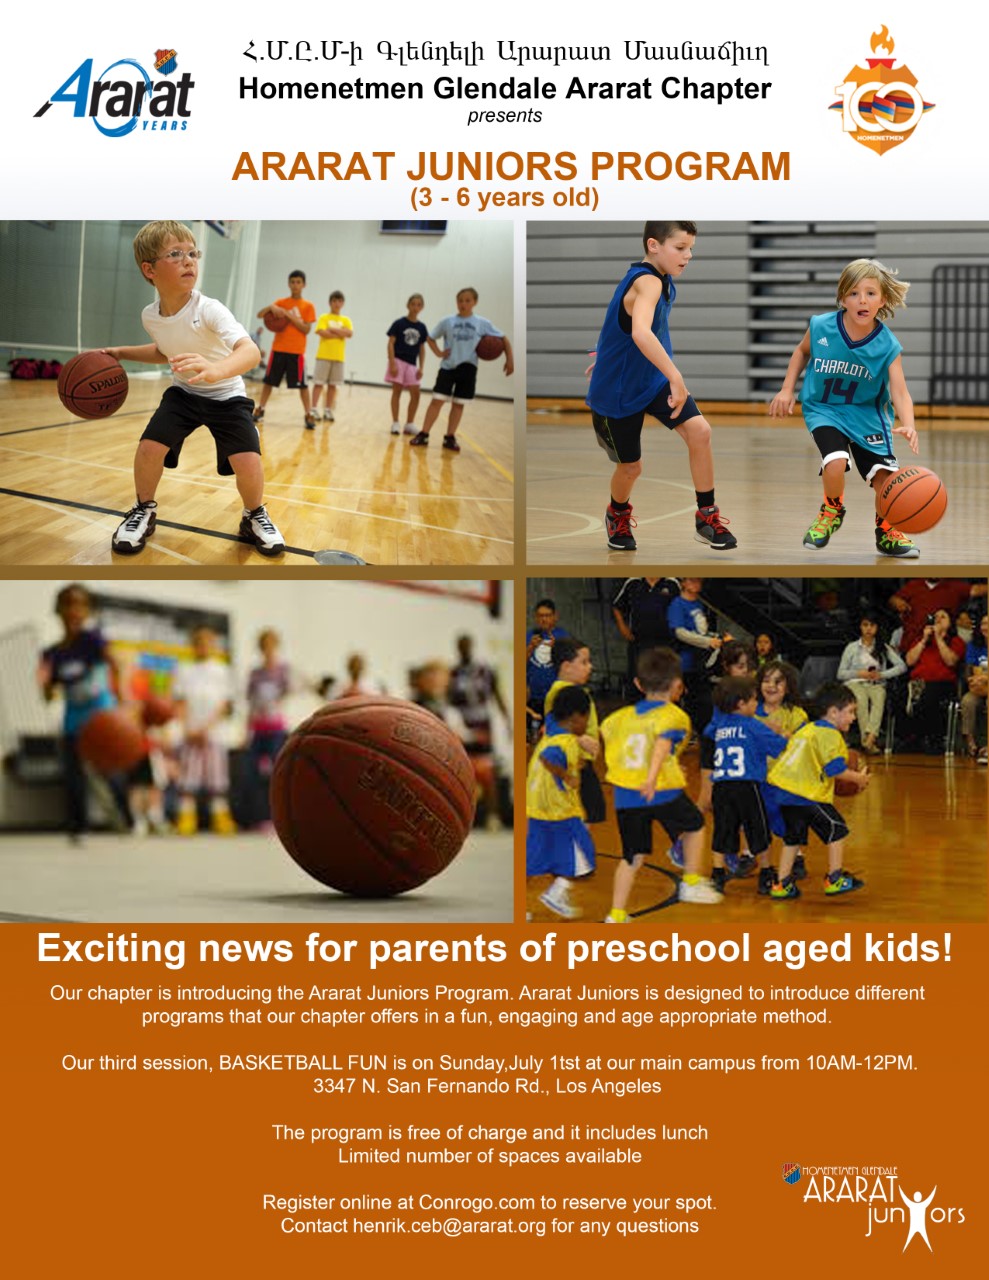 Ararat Juniors Program BASKETBALL FUN